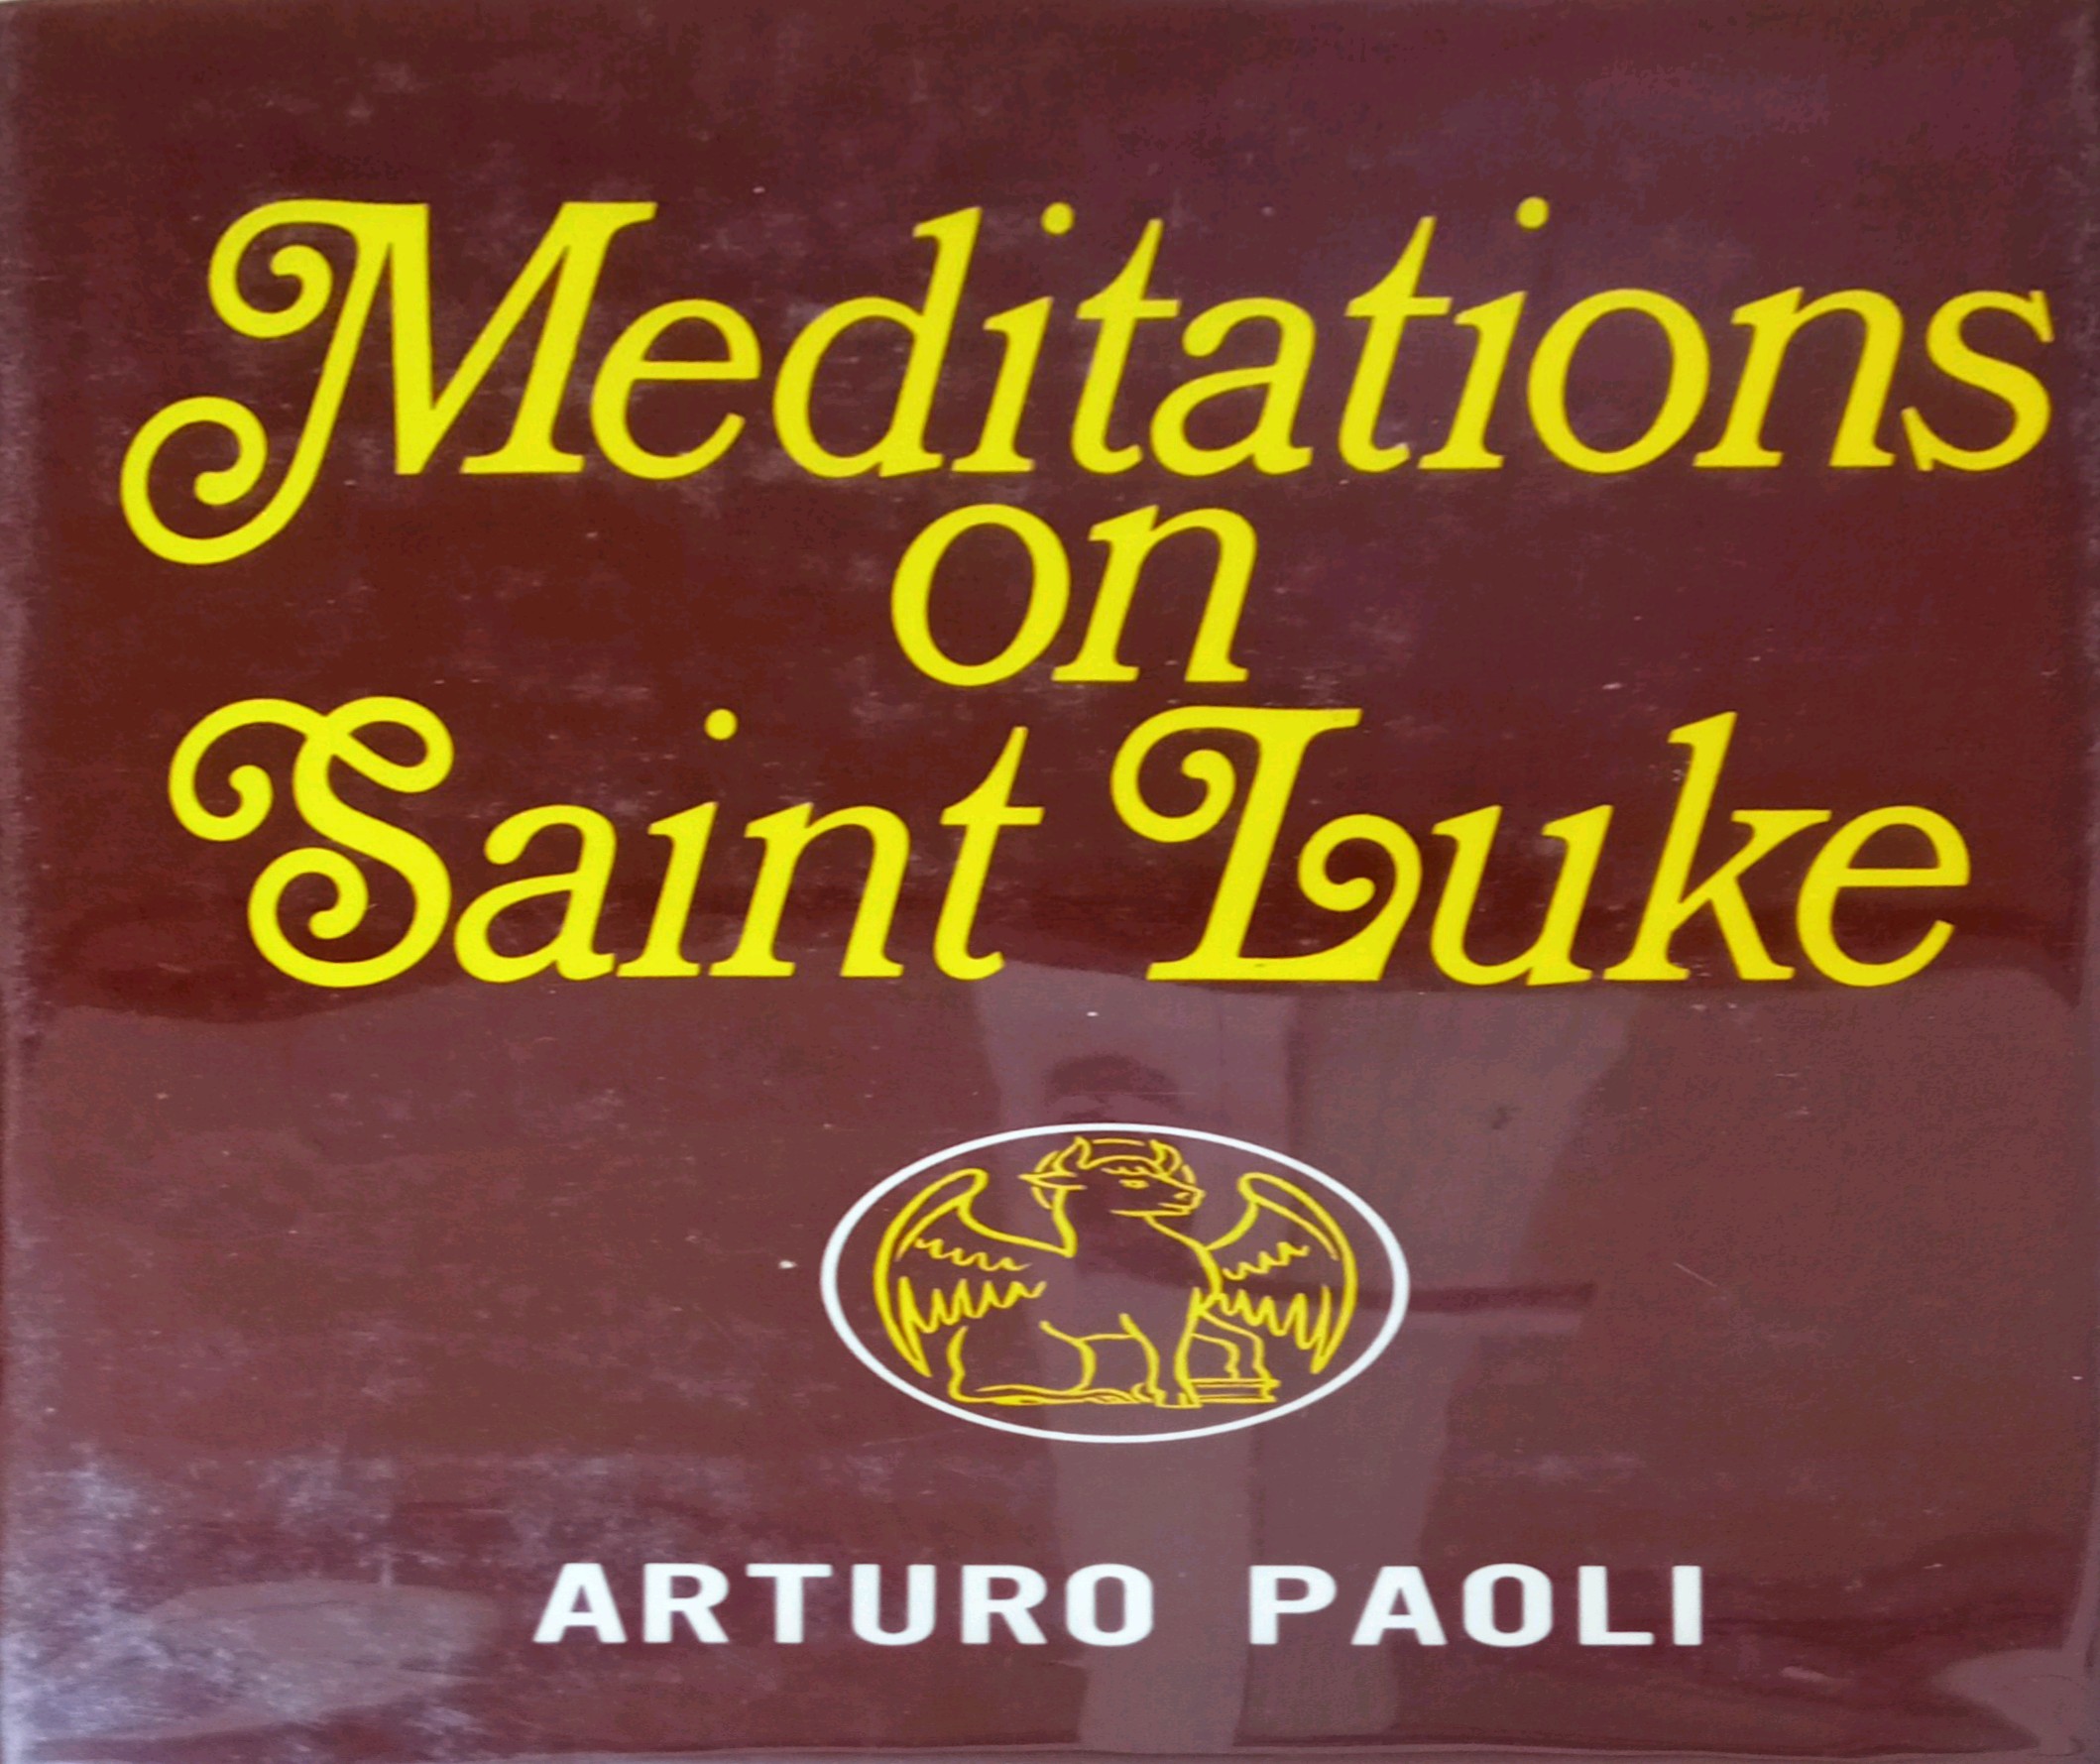 MEDITATIONS ON SAINT LUKE